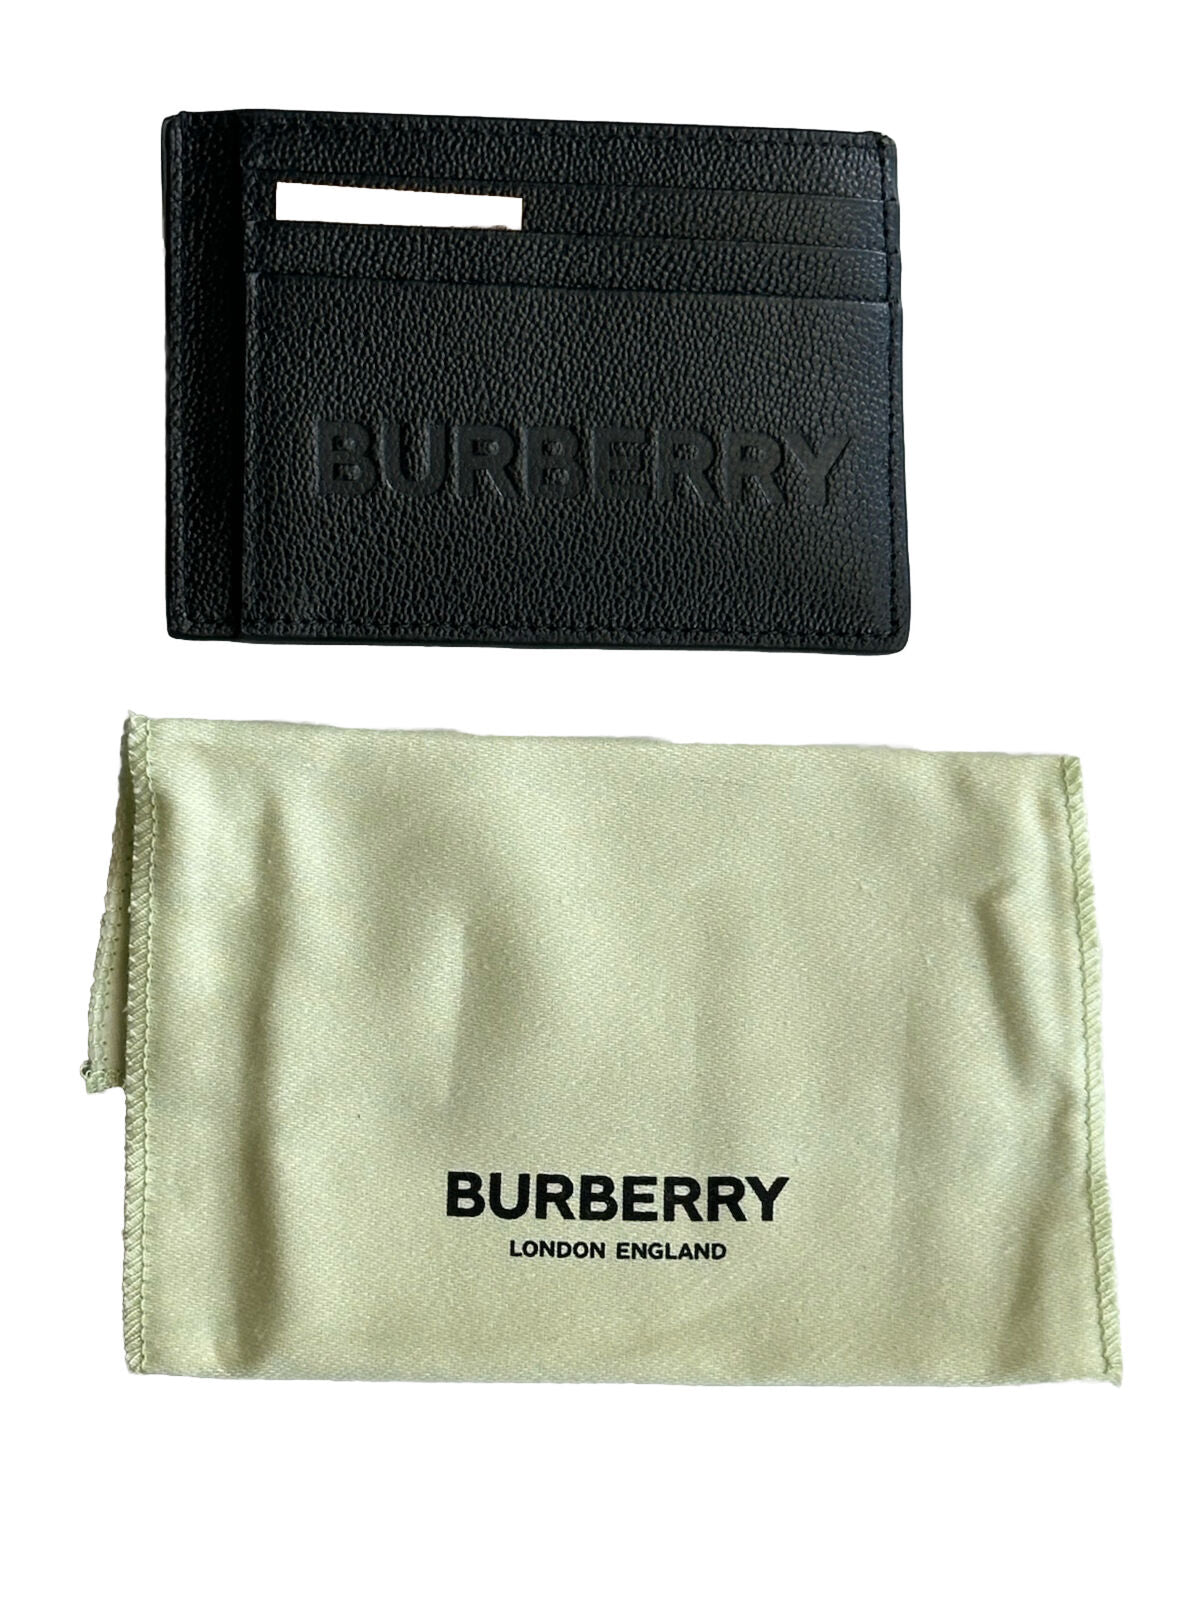 Neu mit Etikett: 350 $ Burberry-Kartenetui aus genarbtem Leder mit Logoprägung in Schwarz 8052878 